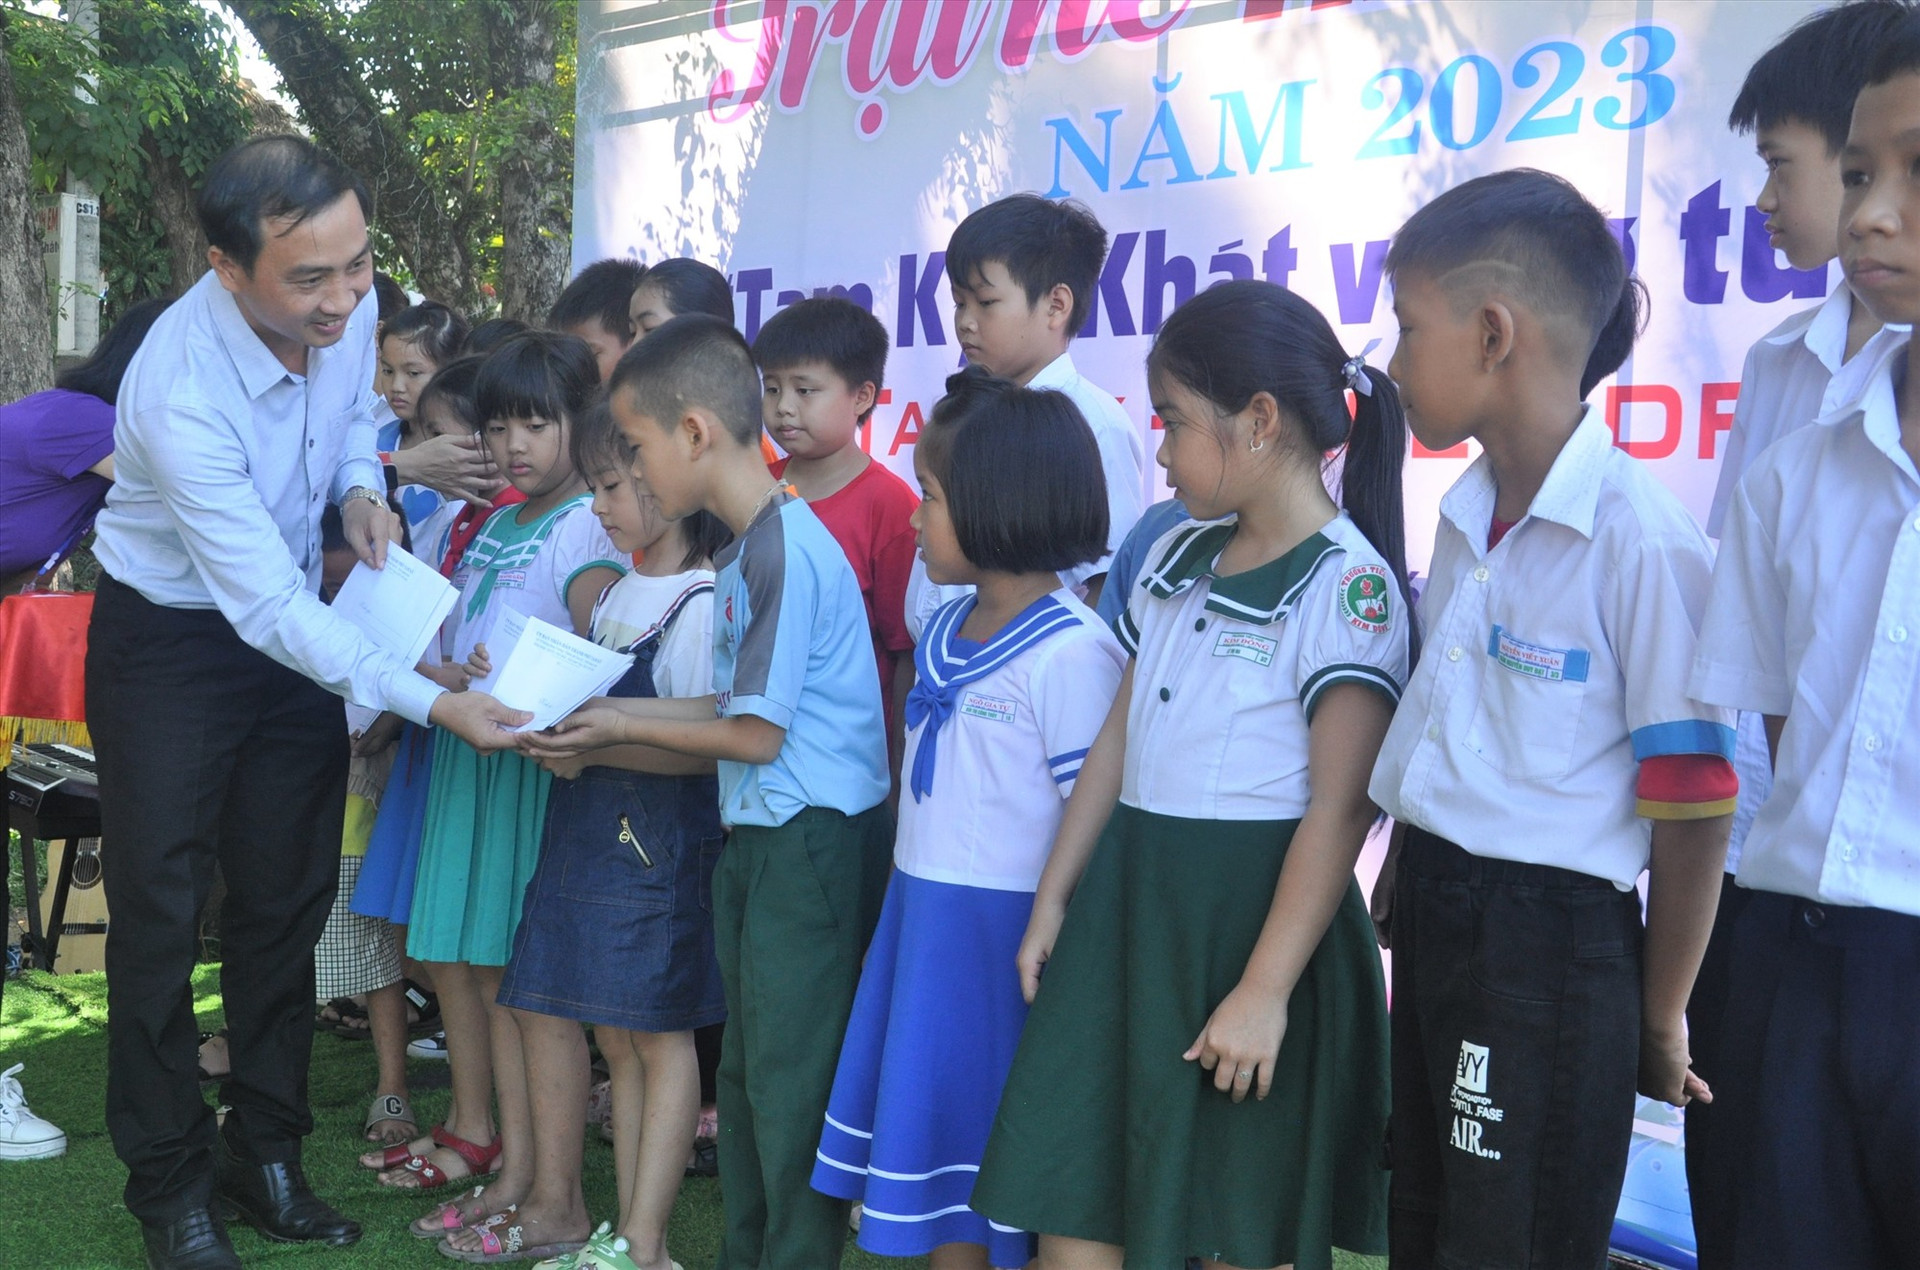 Phó Chủ tịch UBND thành phố Nguyễn Hồng Lai trao quà cho các học sinh nghèo. Ảnh: X.P